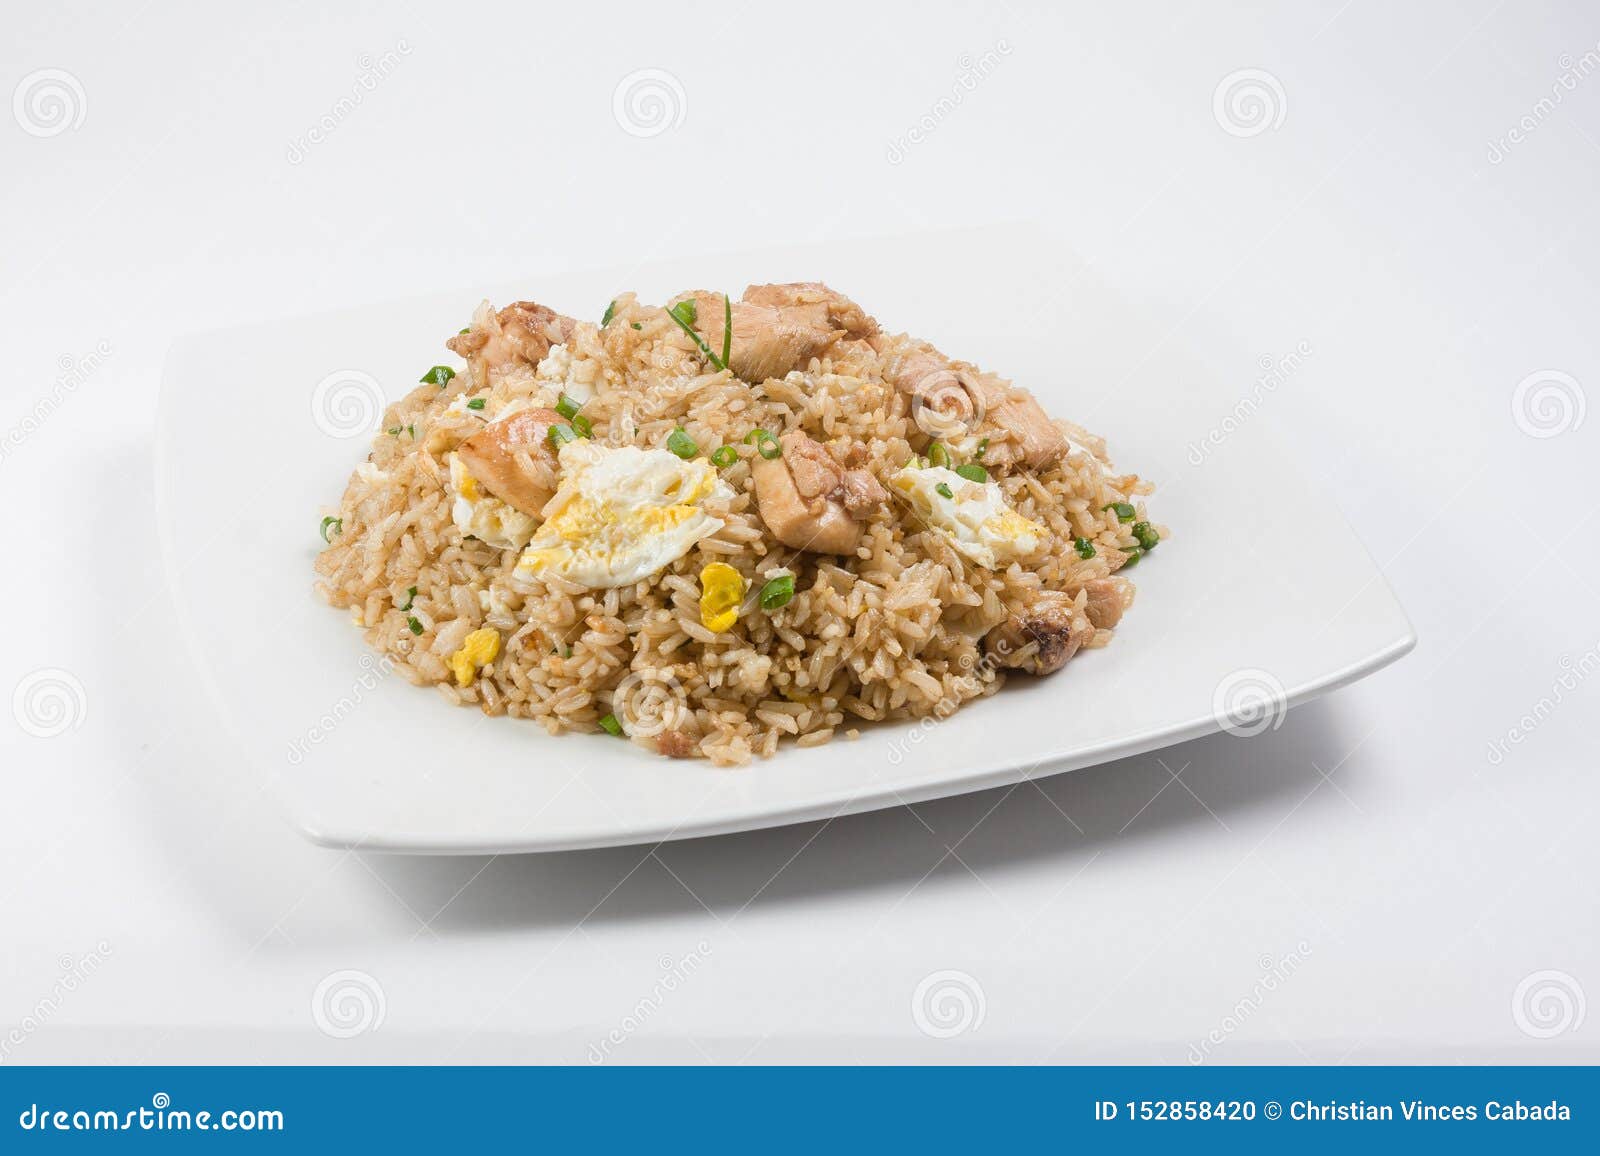 peruvian-chinese rice or arroz chaufa